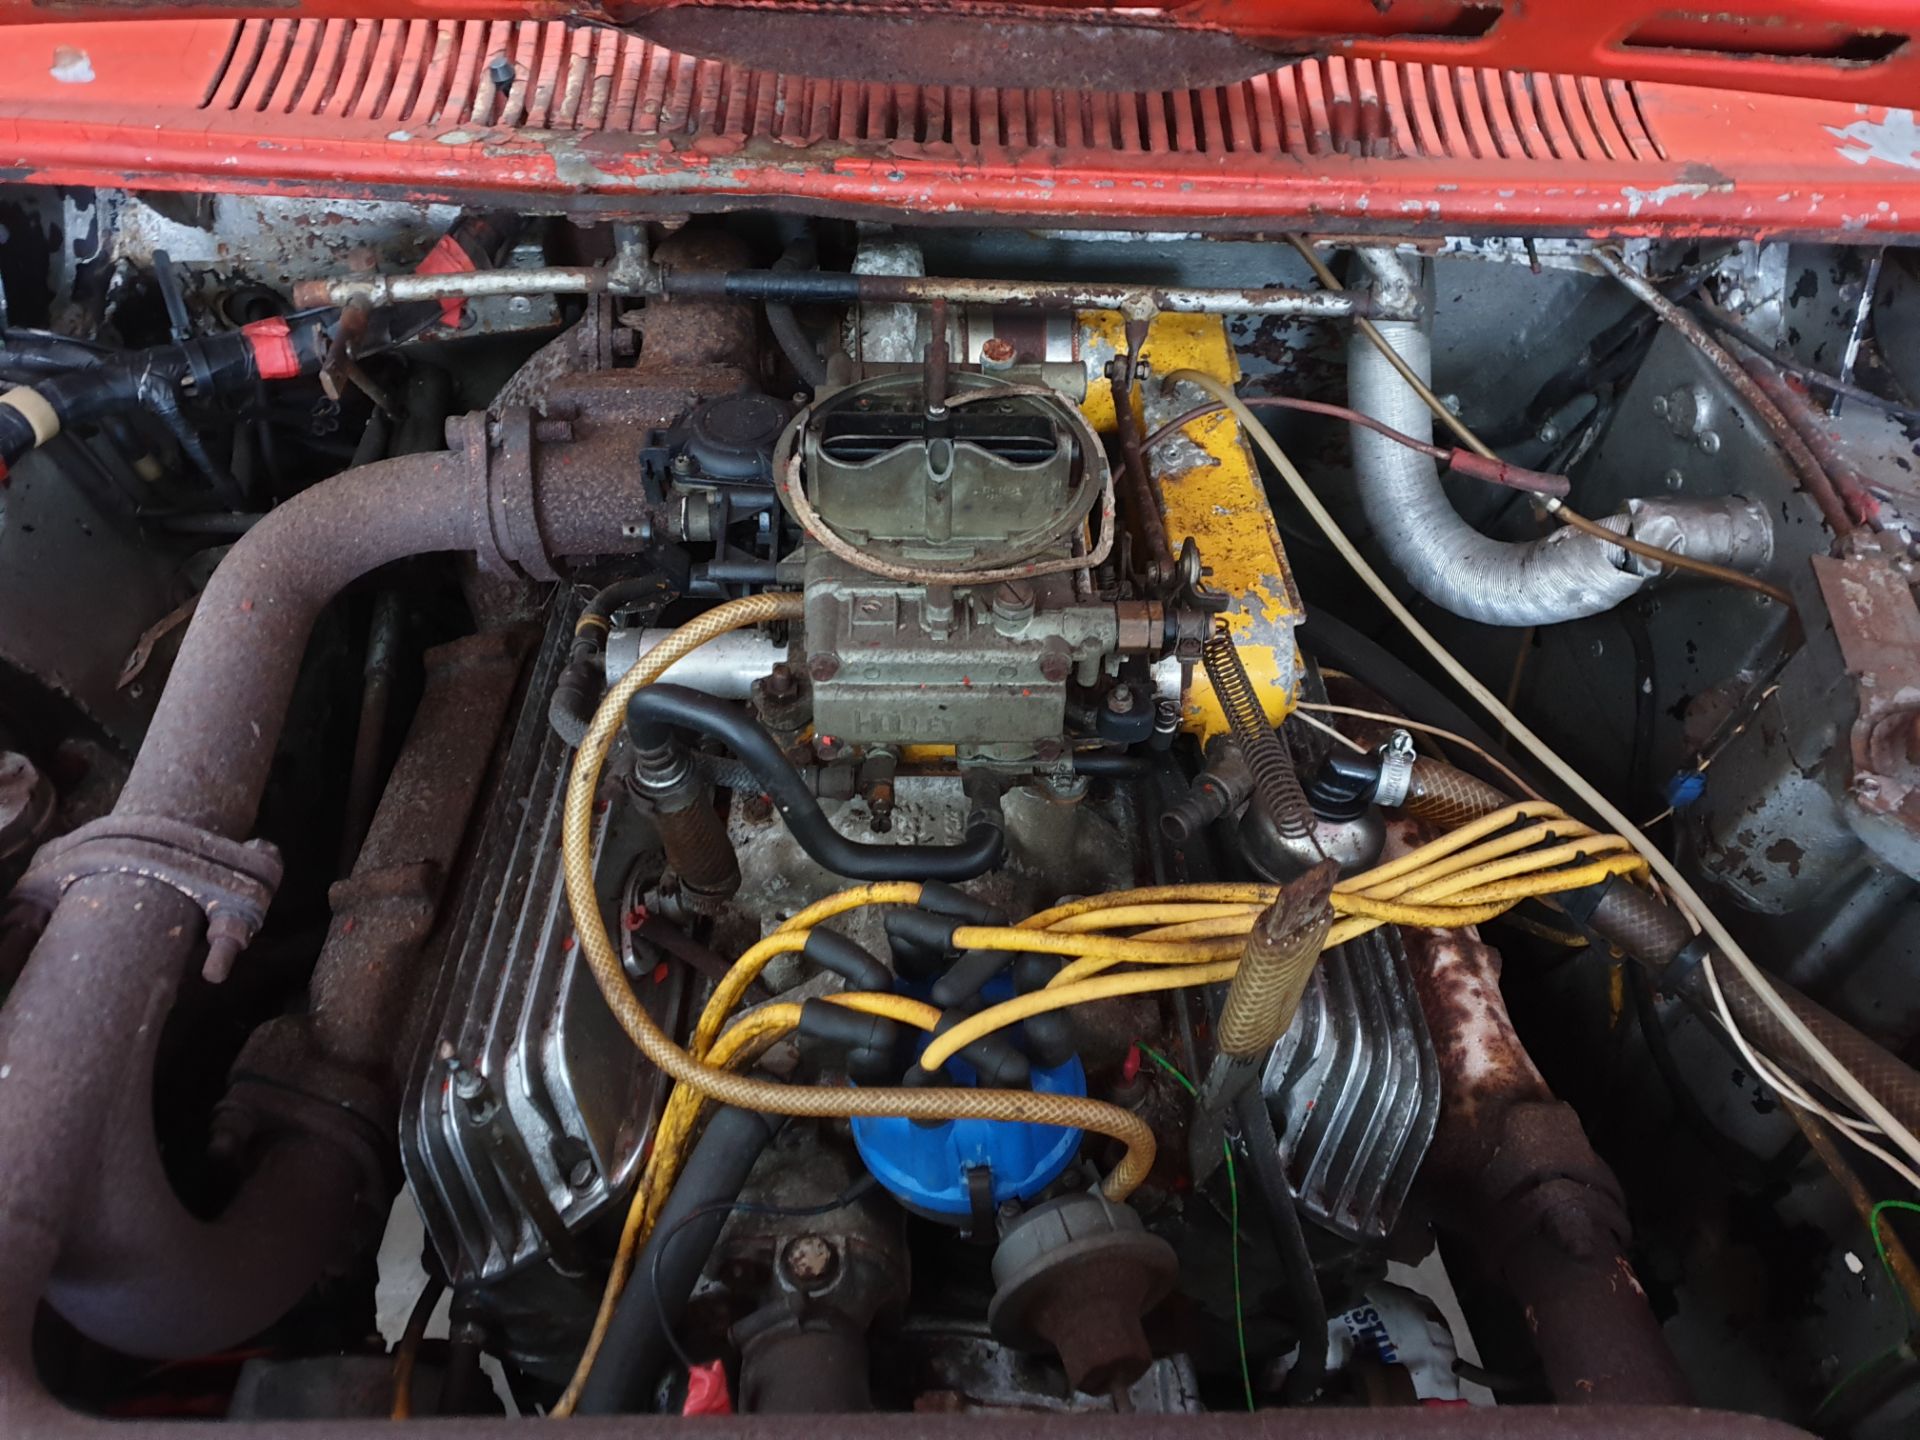 Ford Capri "Hocus Pocus" Drag Car - Image 12 of 24